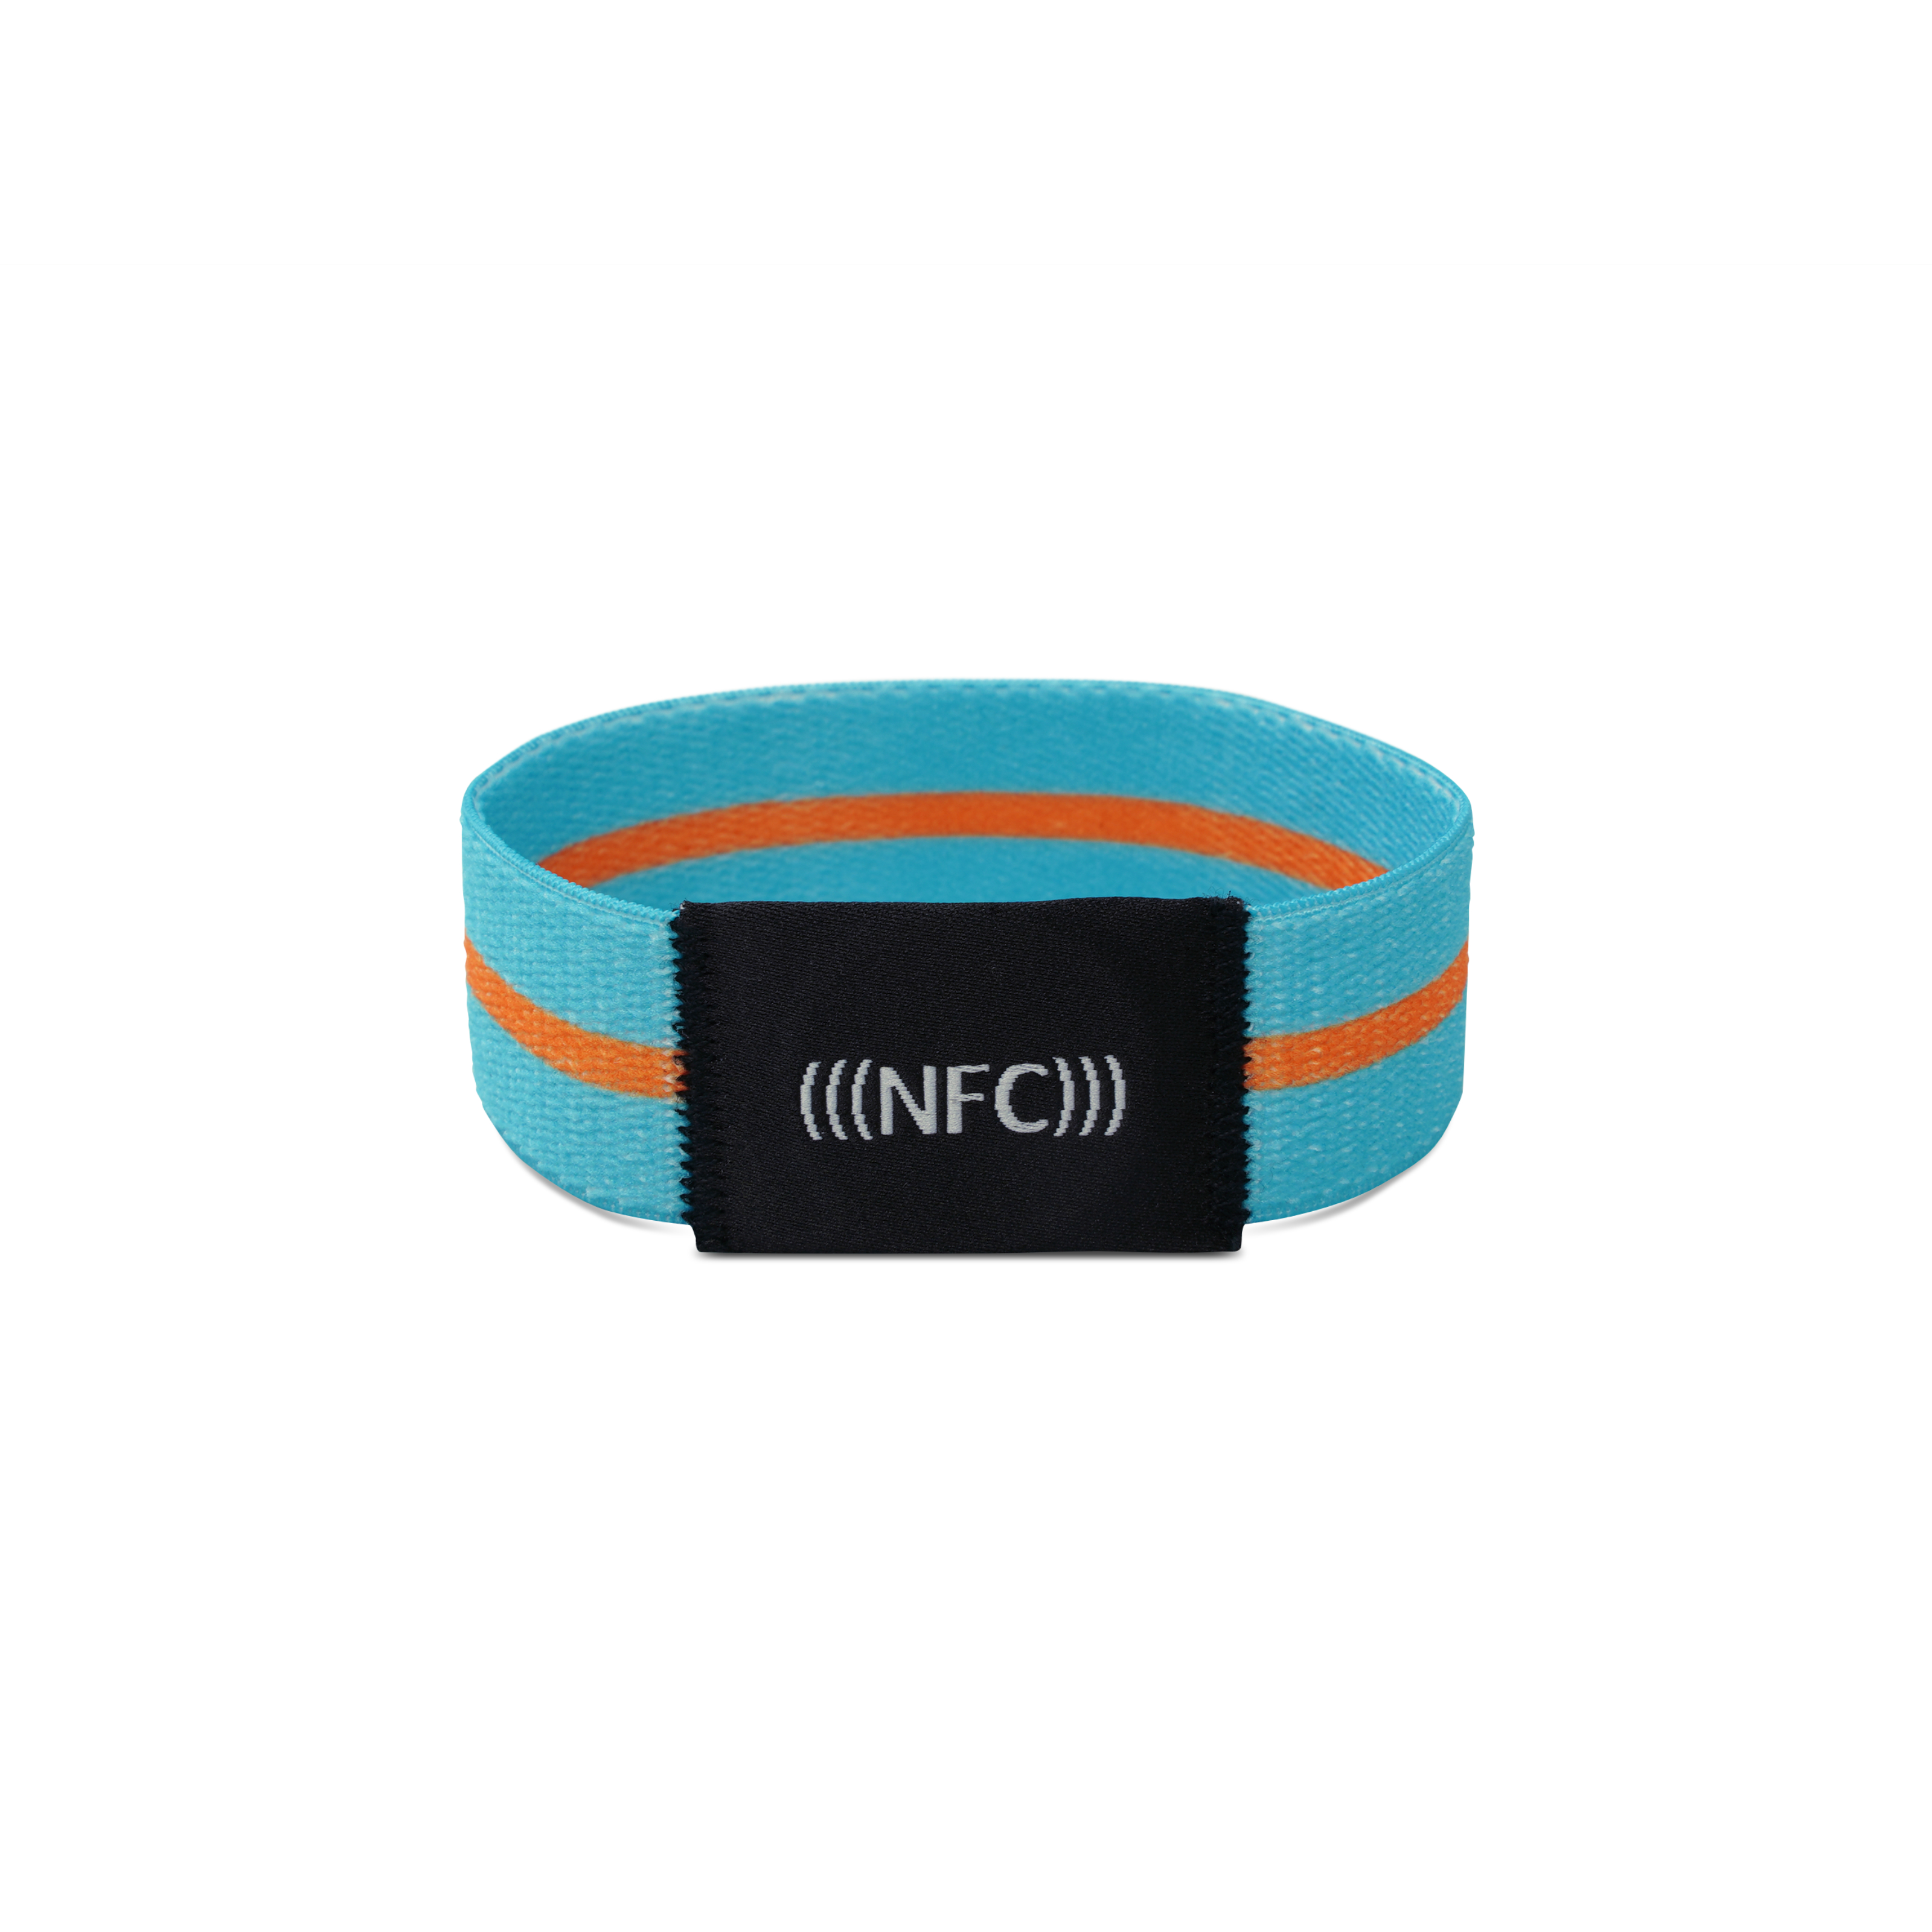 Vorderseite NFC Armband aus hellblauem Stoff mit orangenem Streifen und "NFC" Aufstickung